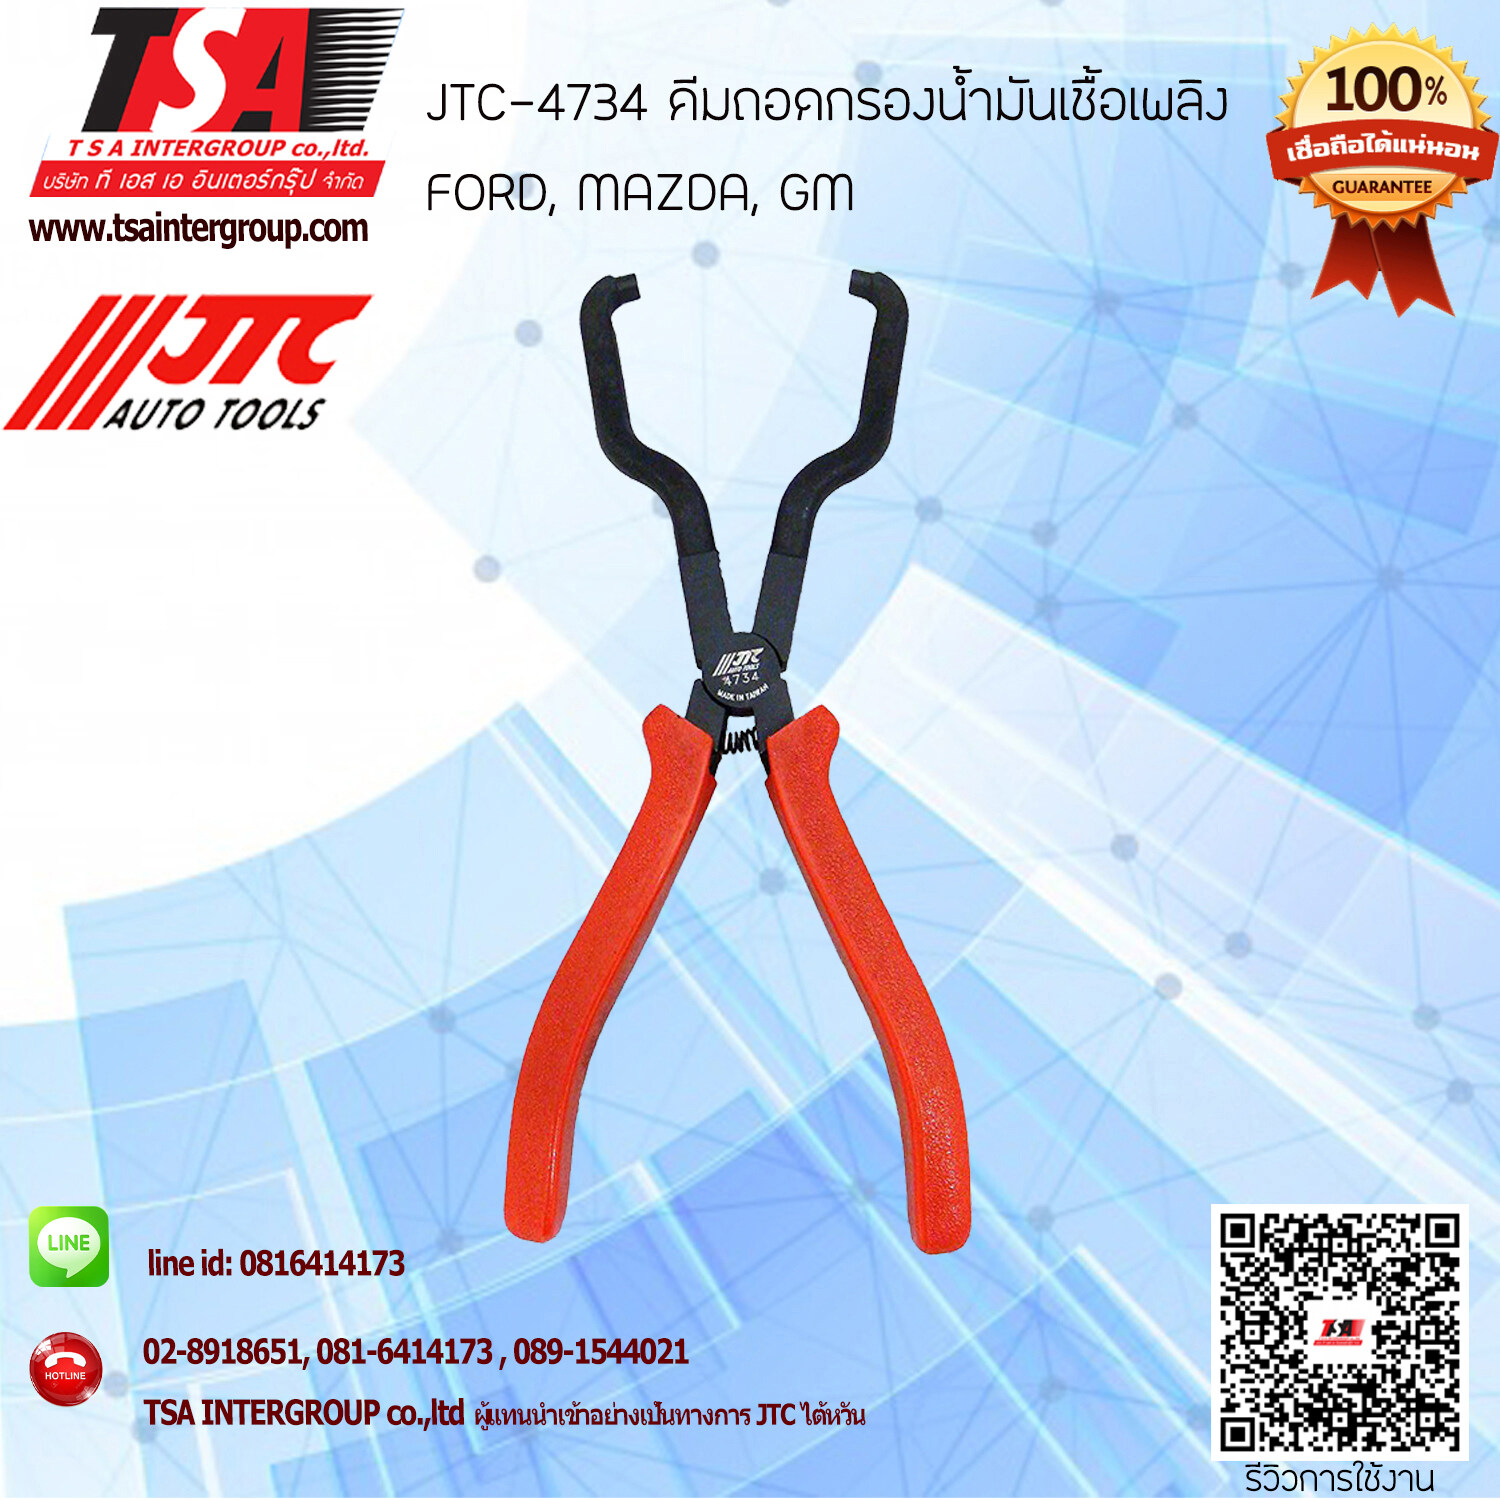 Jtc Tools ราคาถูก ซื้อออนไลน์ที่ - มิ.ย. 2022 | Lazada.co.th